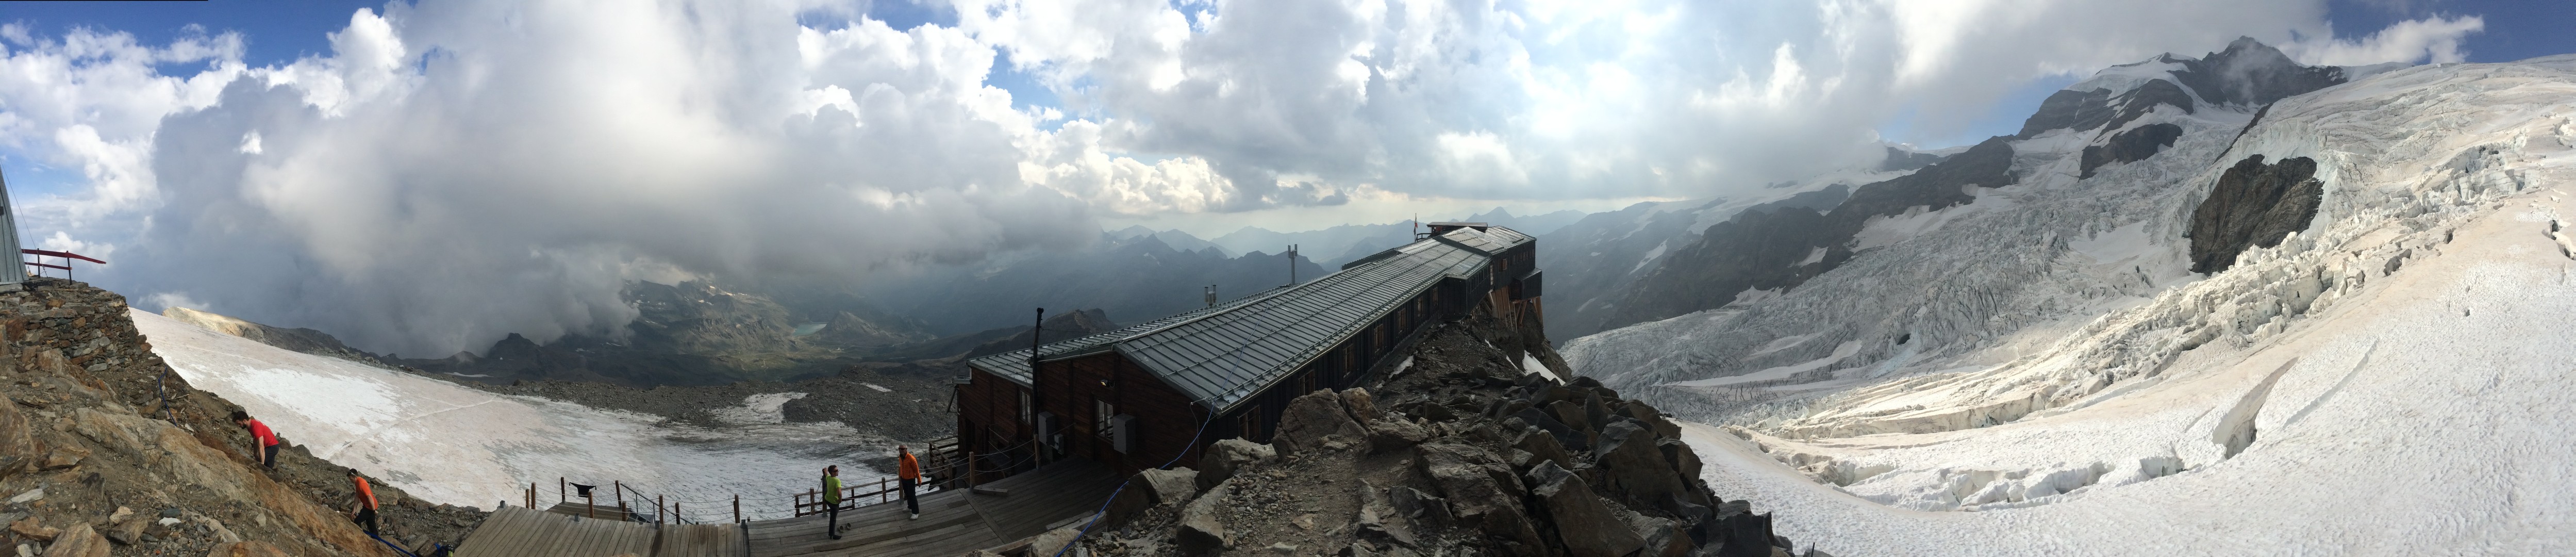 Tour de Monte Rosa - Rifugio Gnifetti panorama